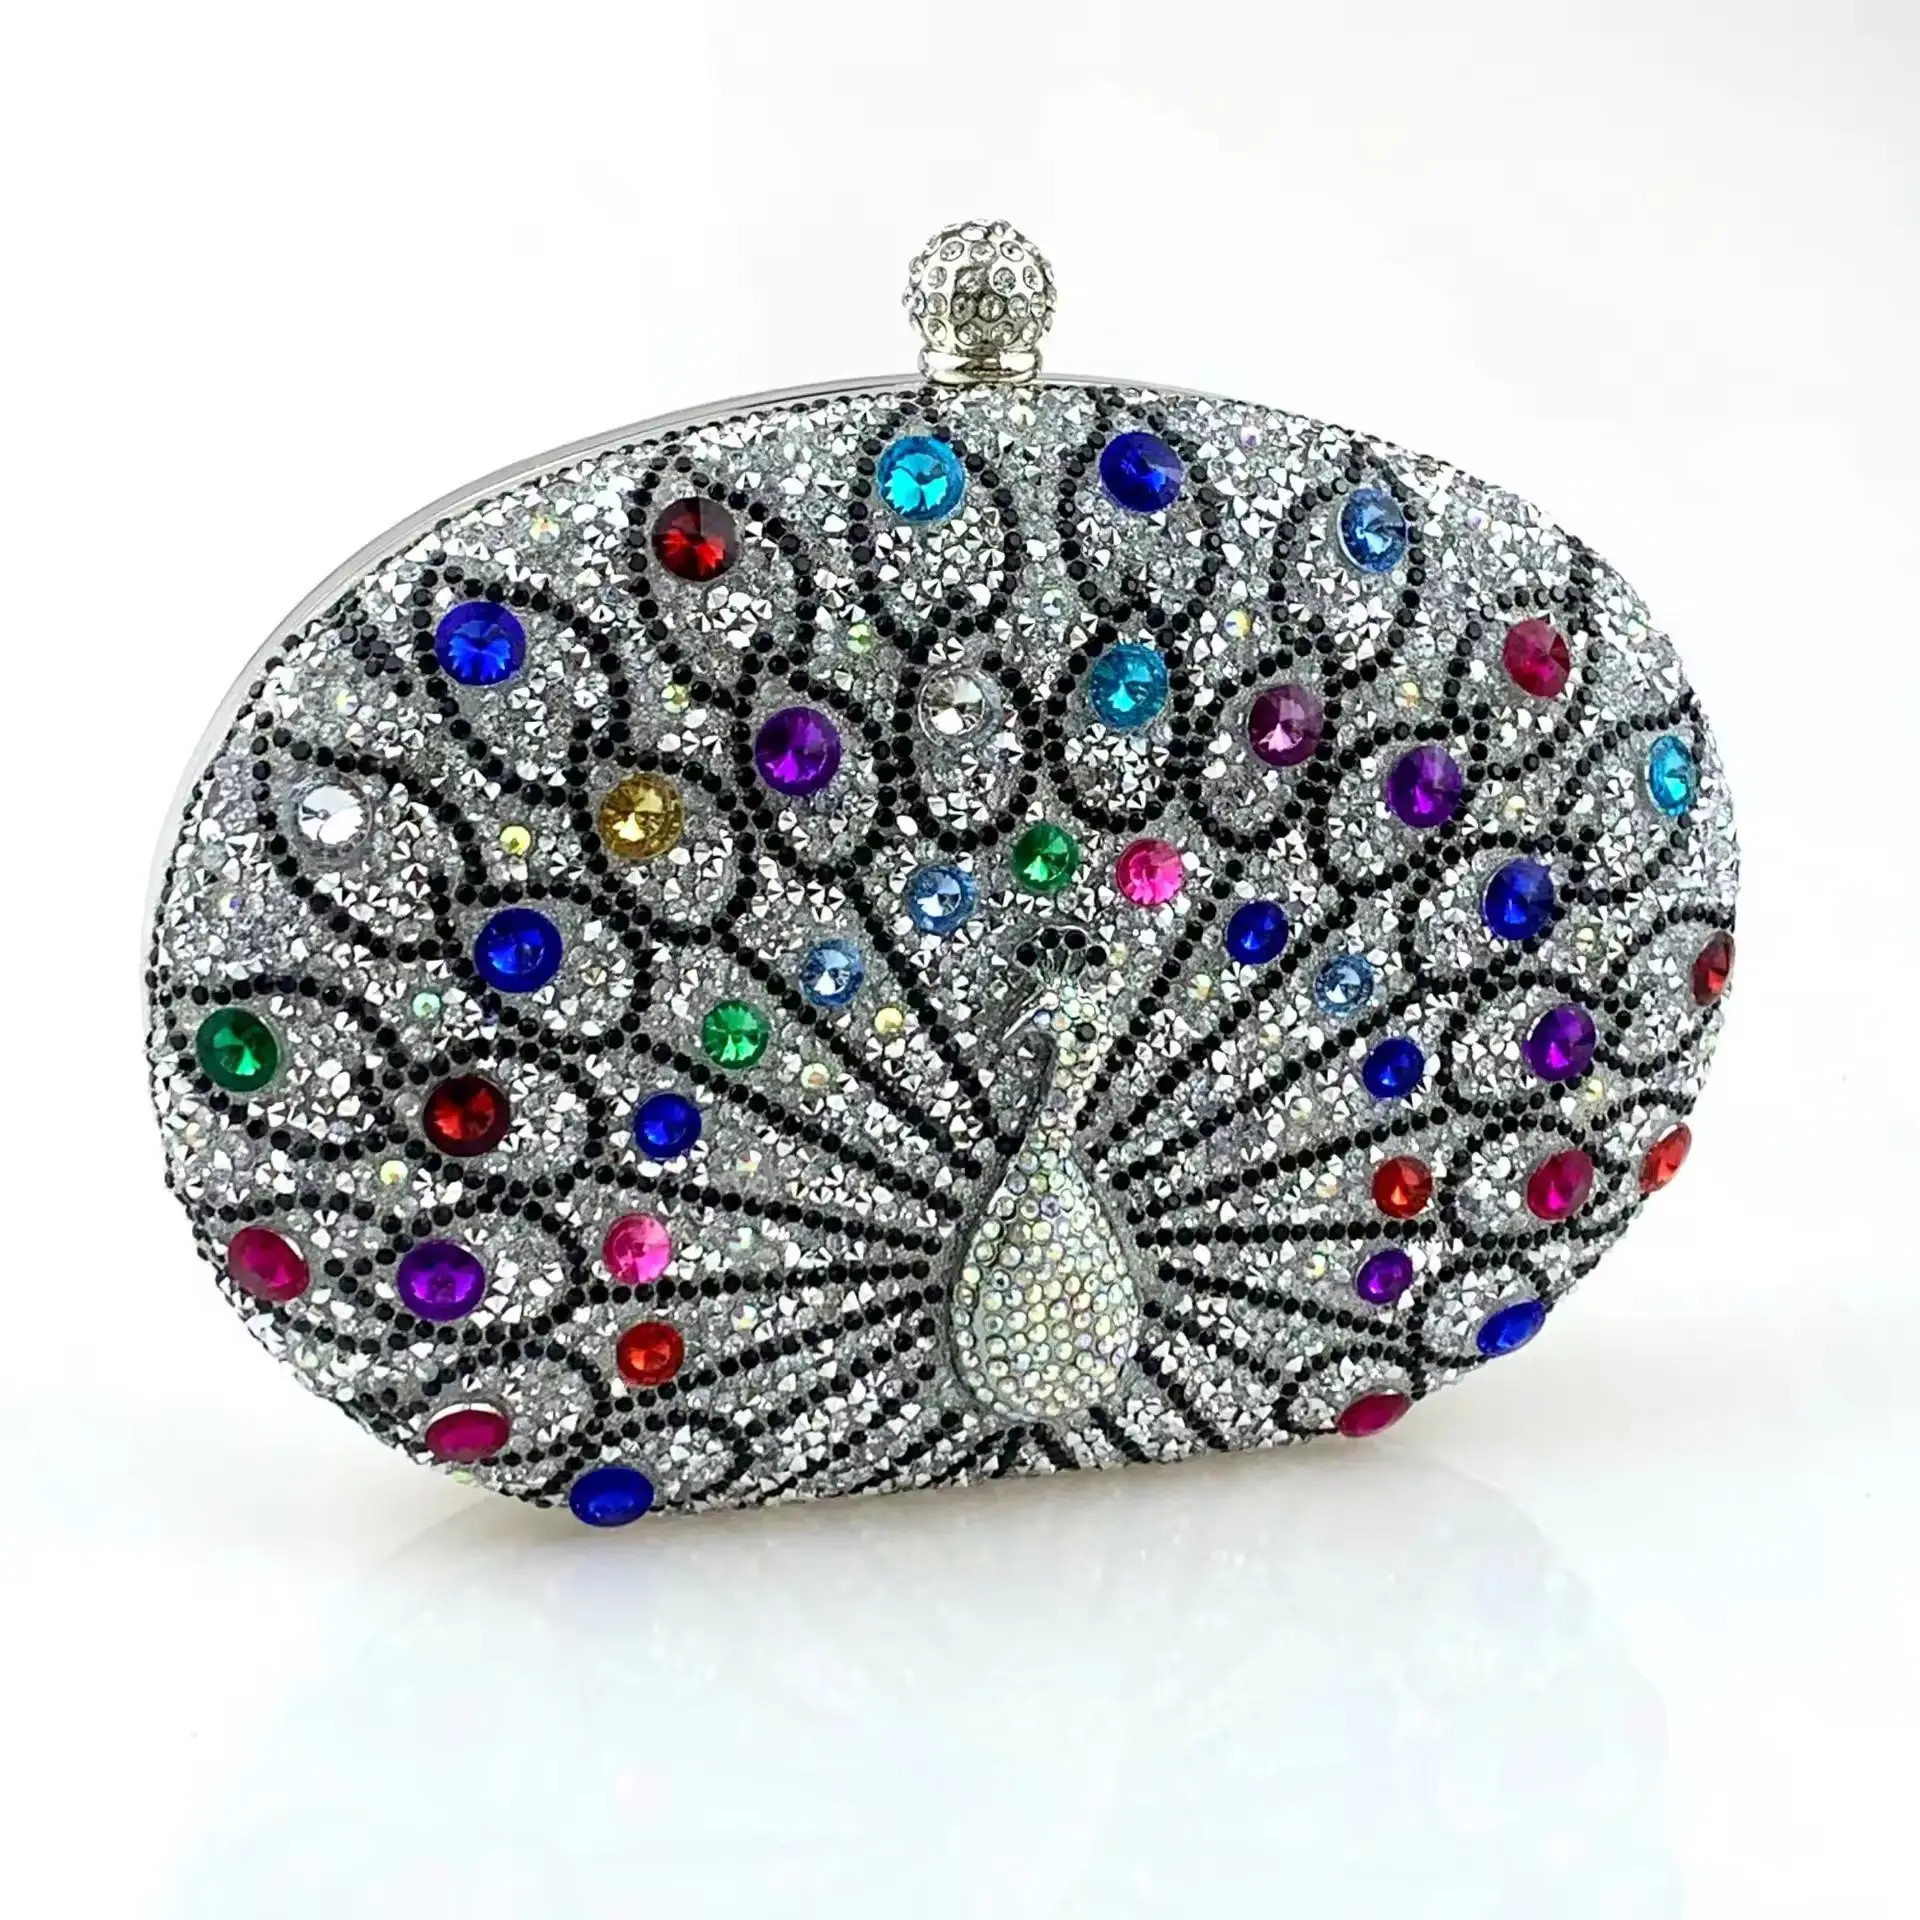 Vintage-mode exquisite pfau luxus diamant party kupplung damen strass abend taschen